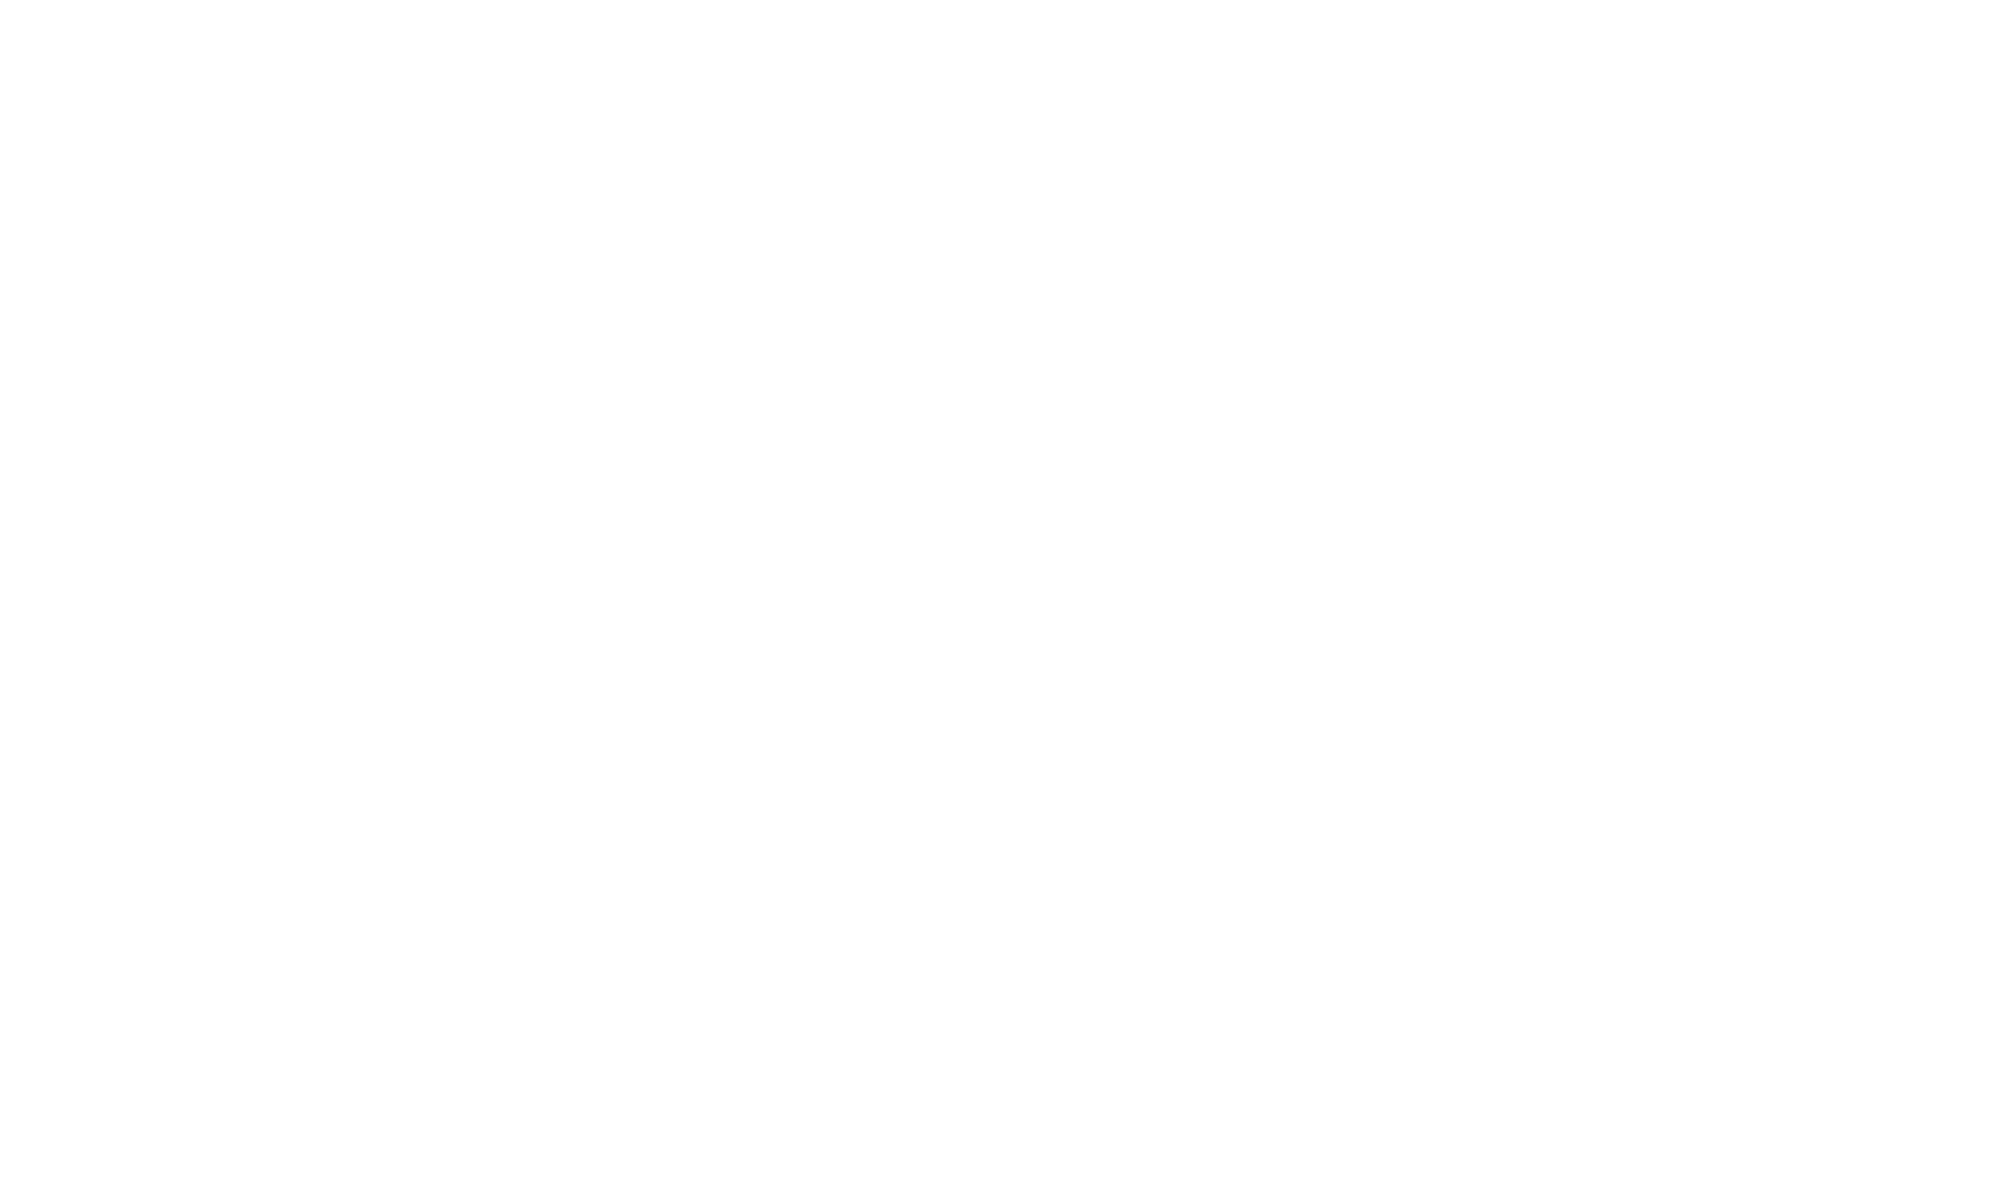 Hitchin Garden Co Logo Branding